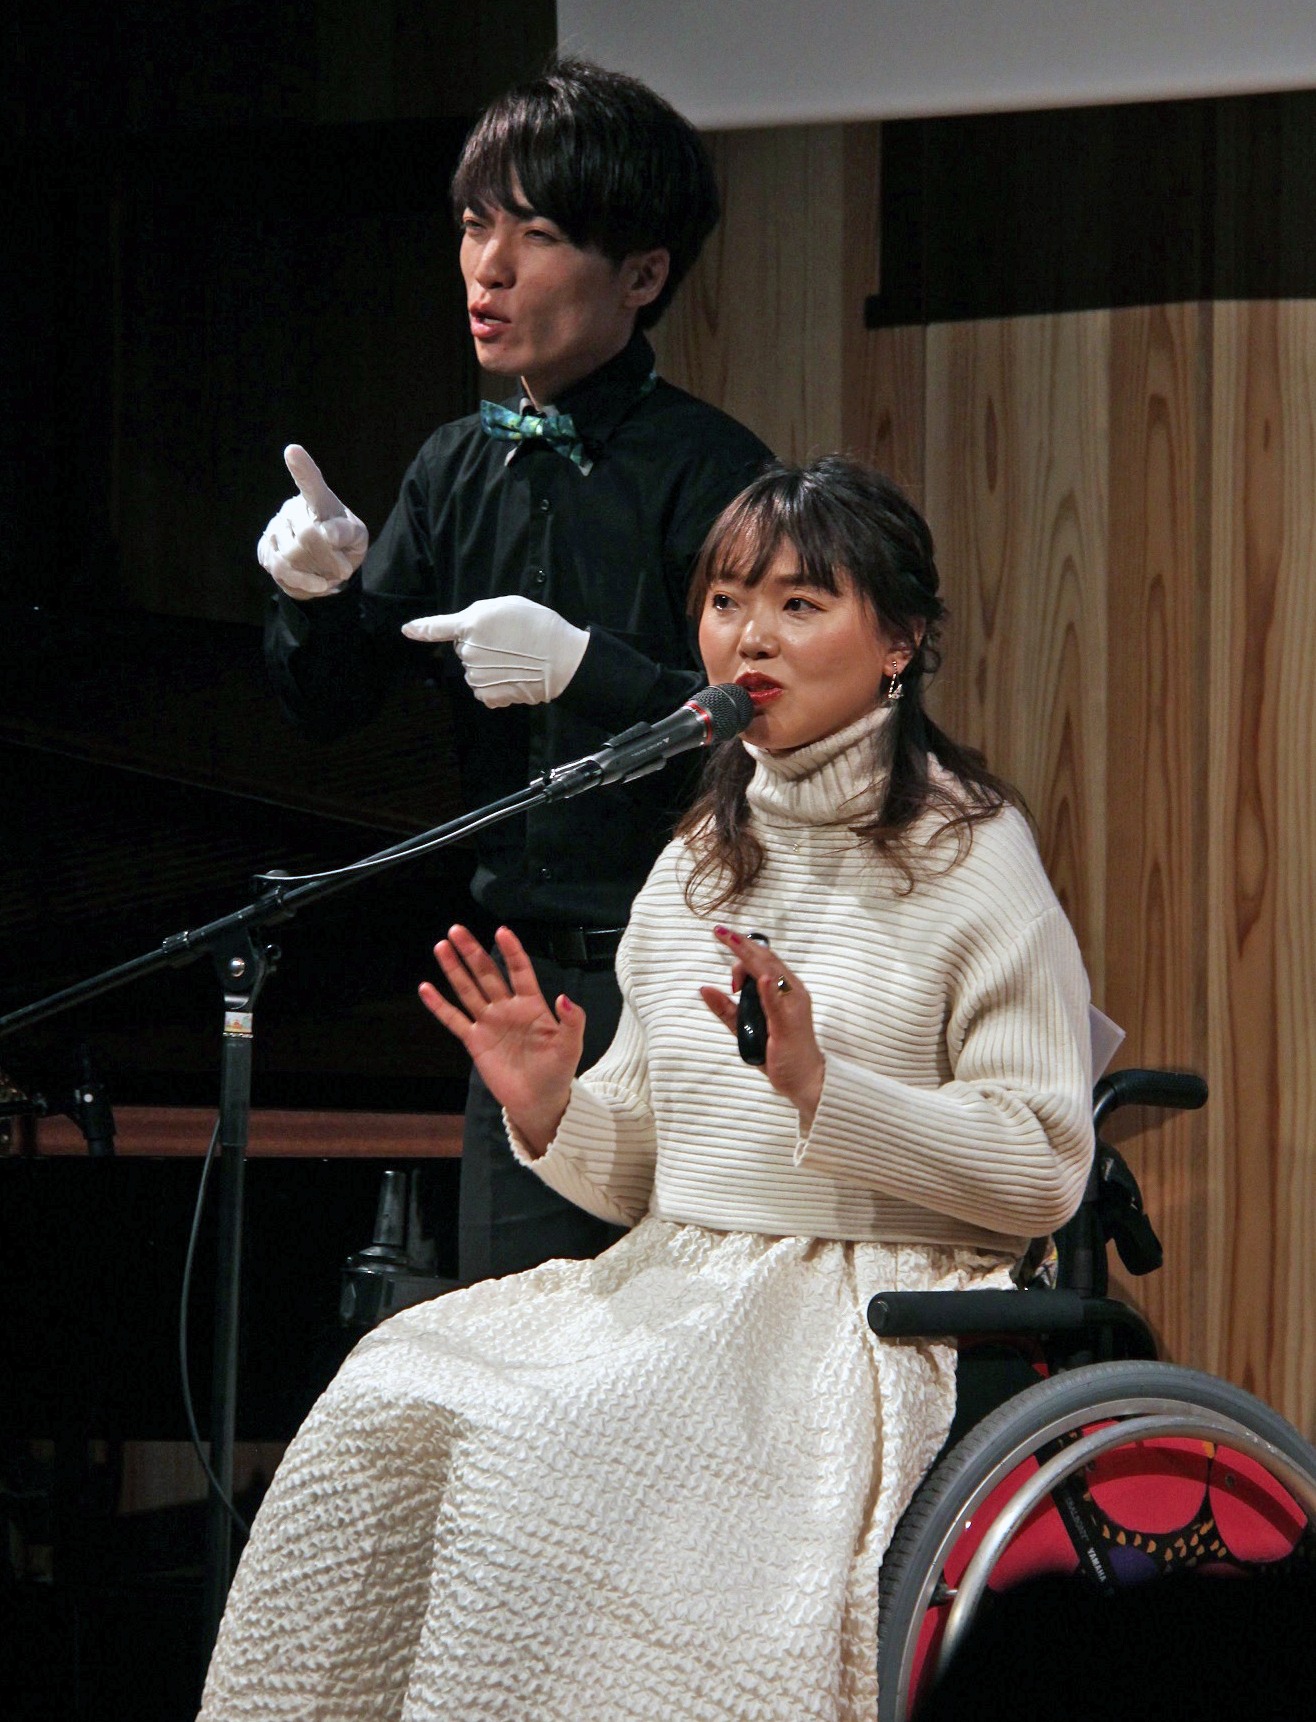 「多くの人にバリアフリーを伝えるには話すだけより歌うと伝わりやすいと気付いた」と話す小澤綾子さん